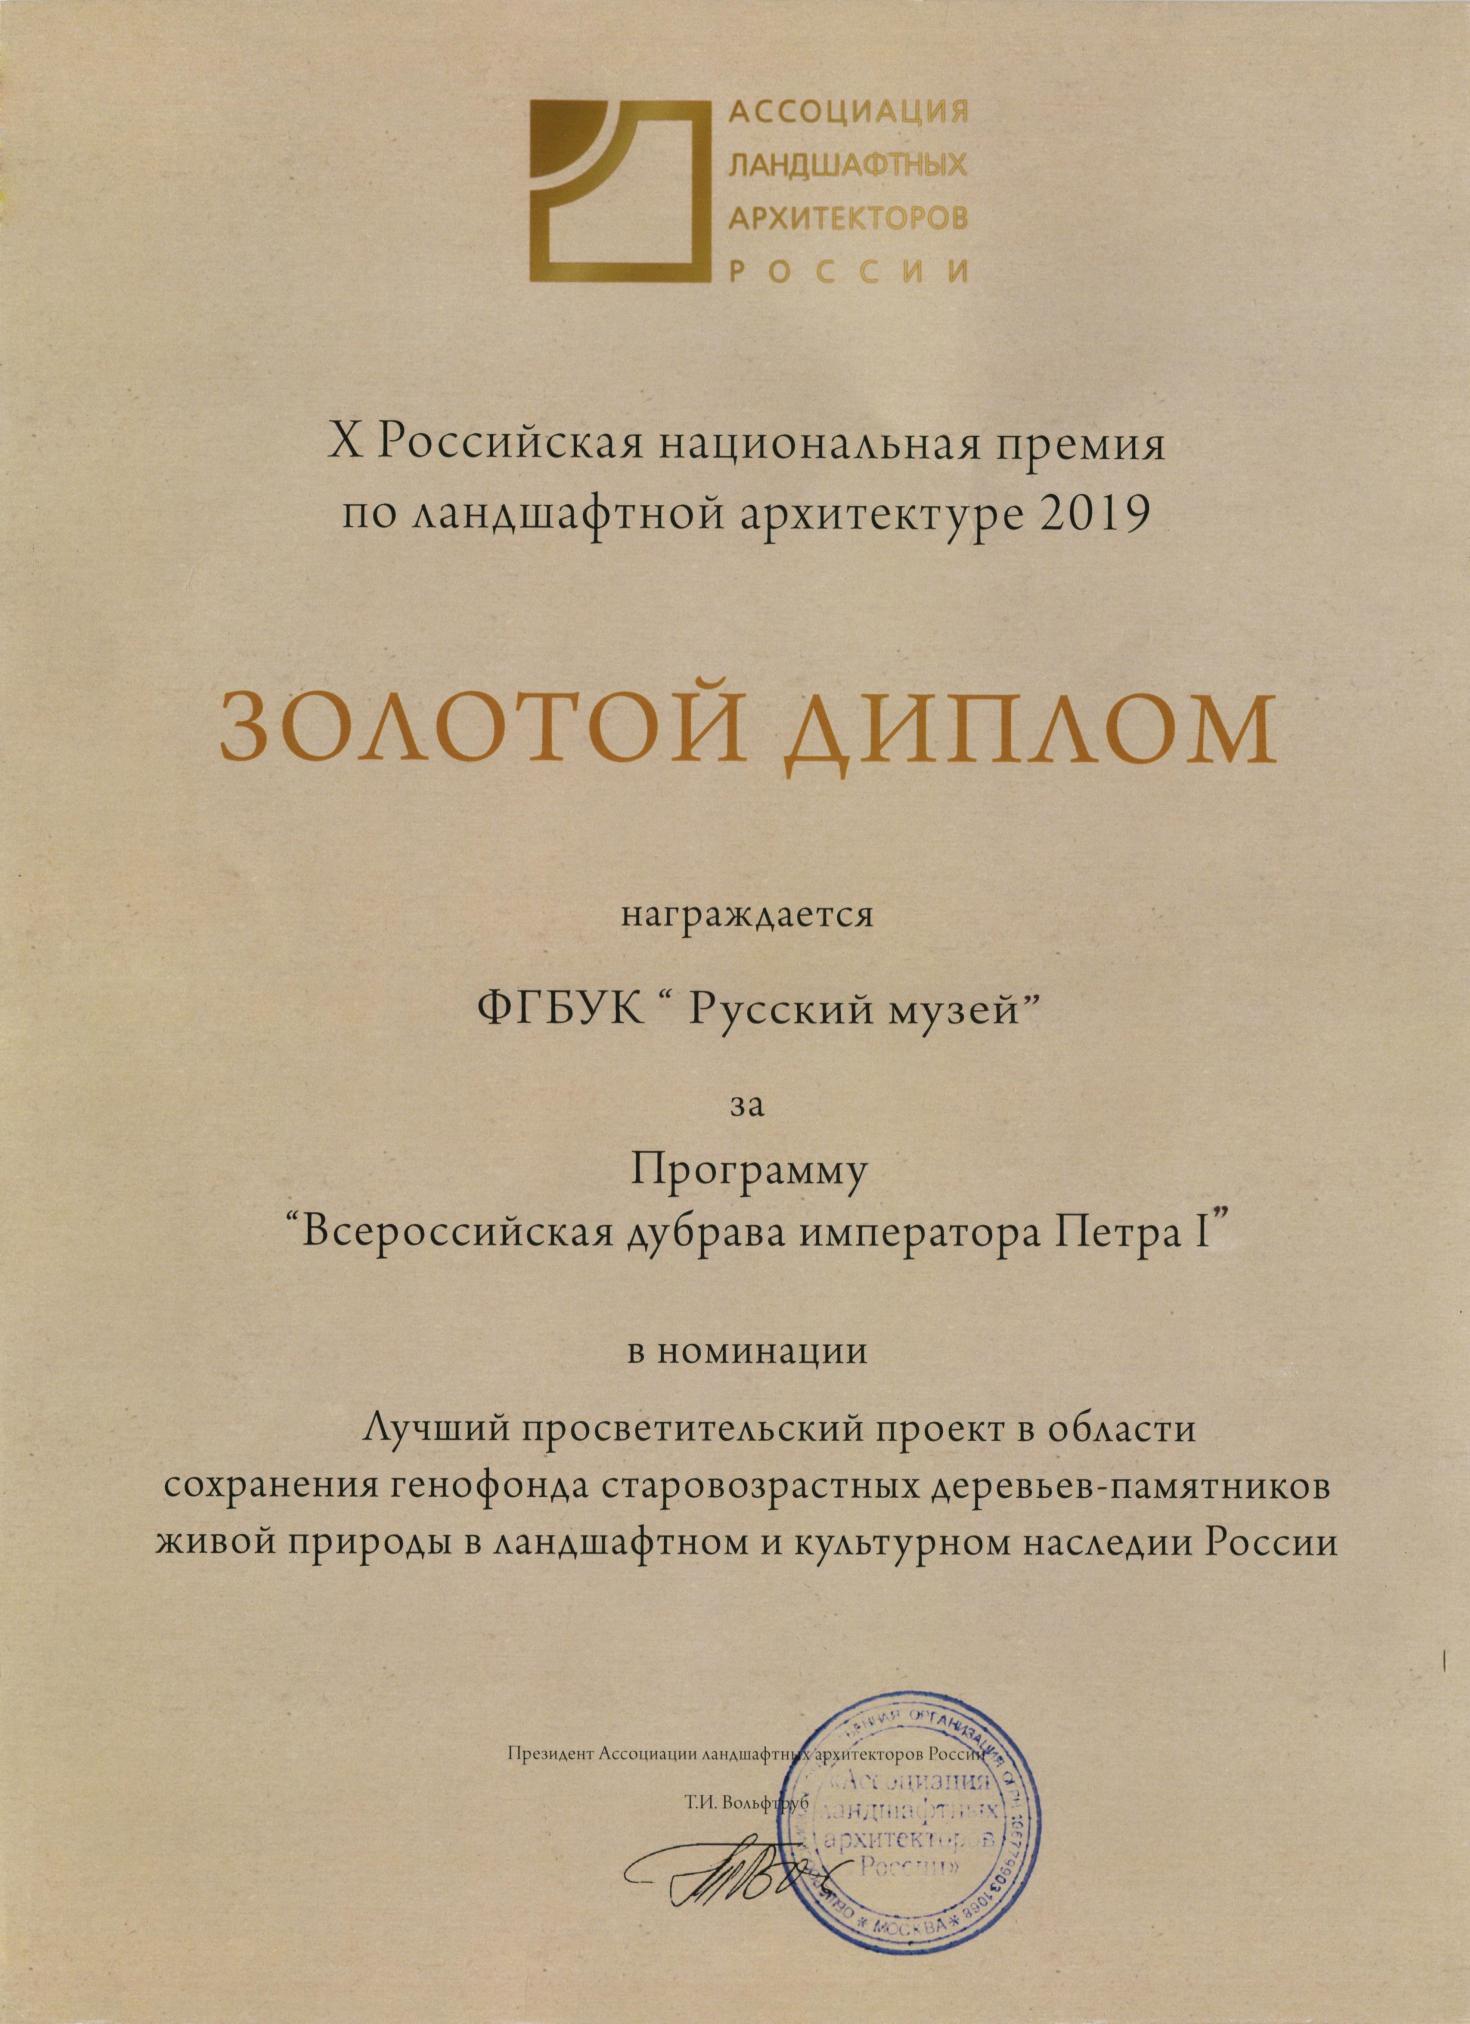 Золотой диплом АЛАРОС в X Российской национальной премии по ландшафтной архитектуре